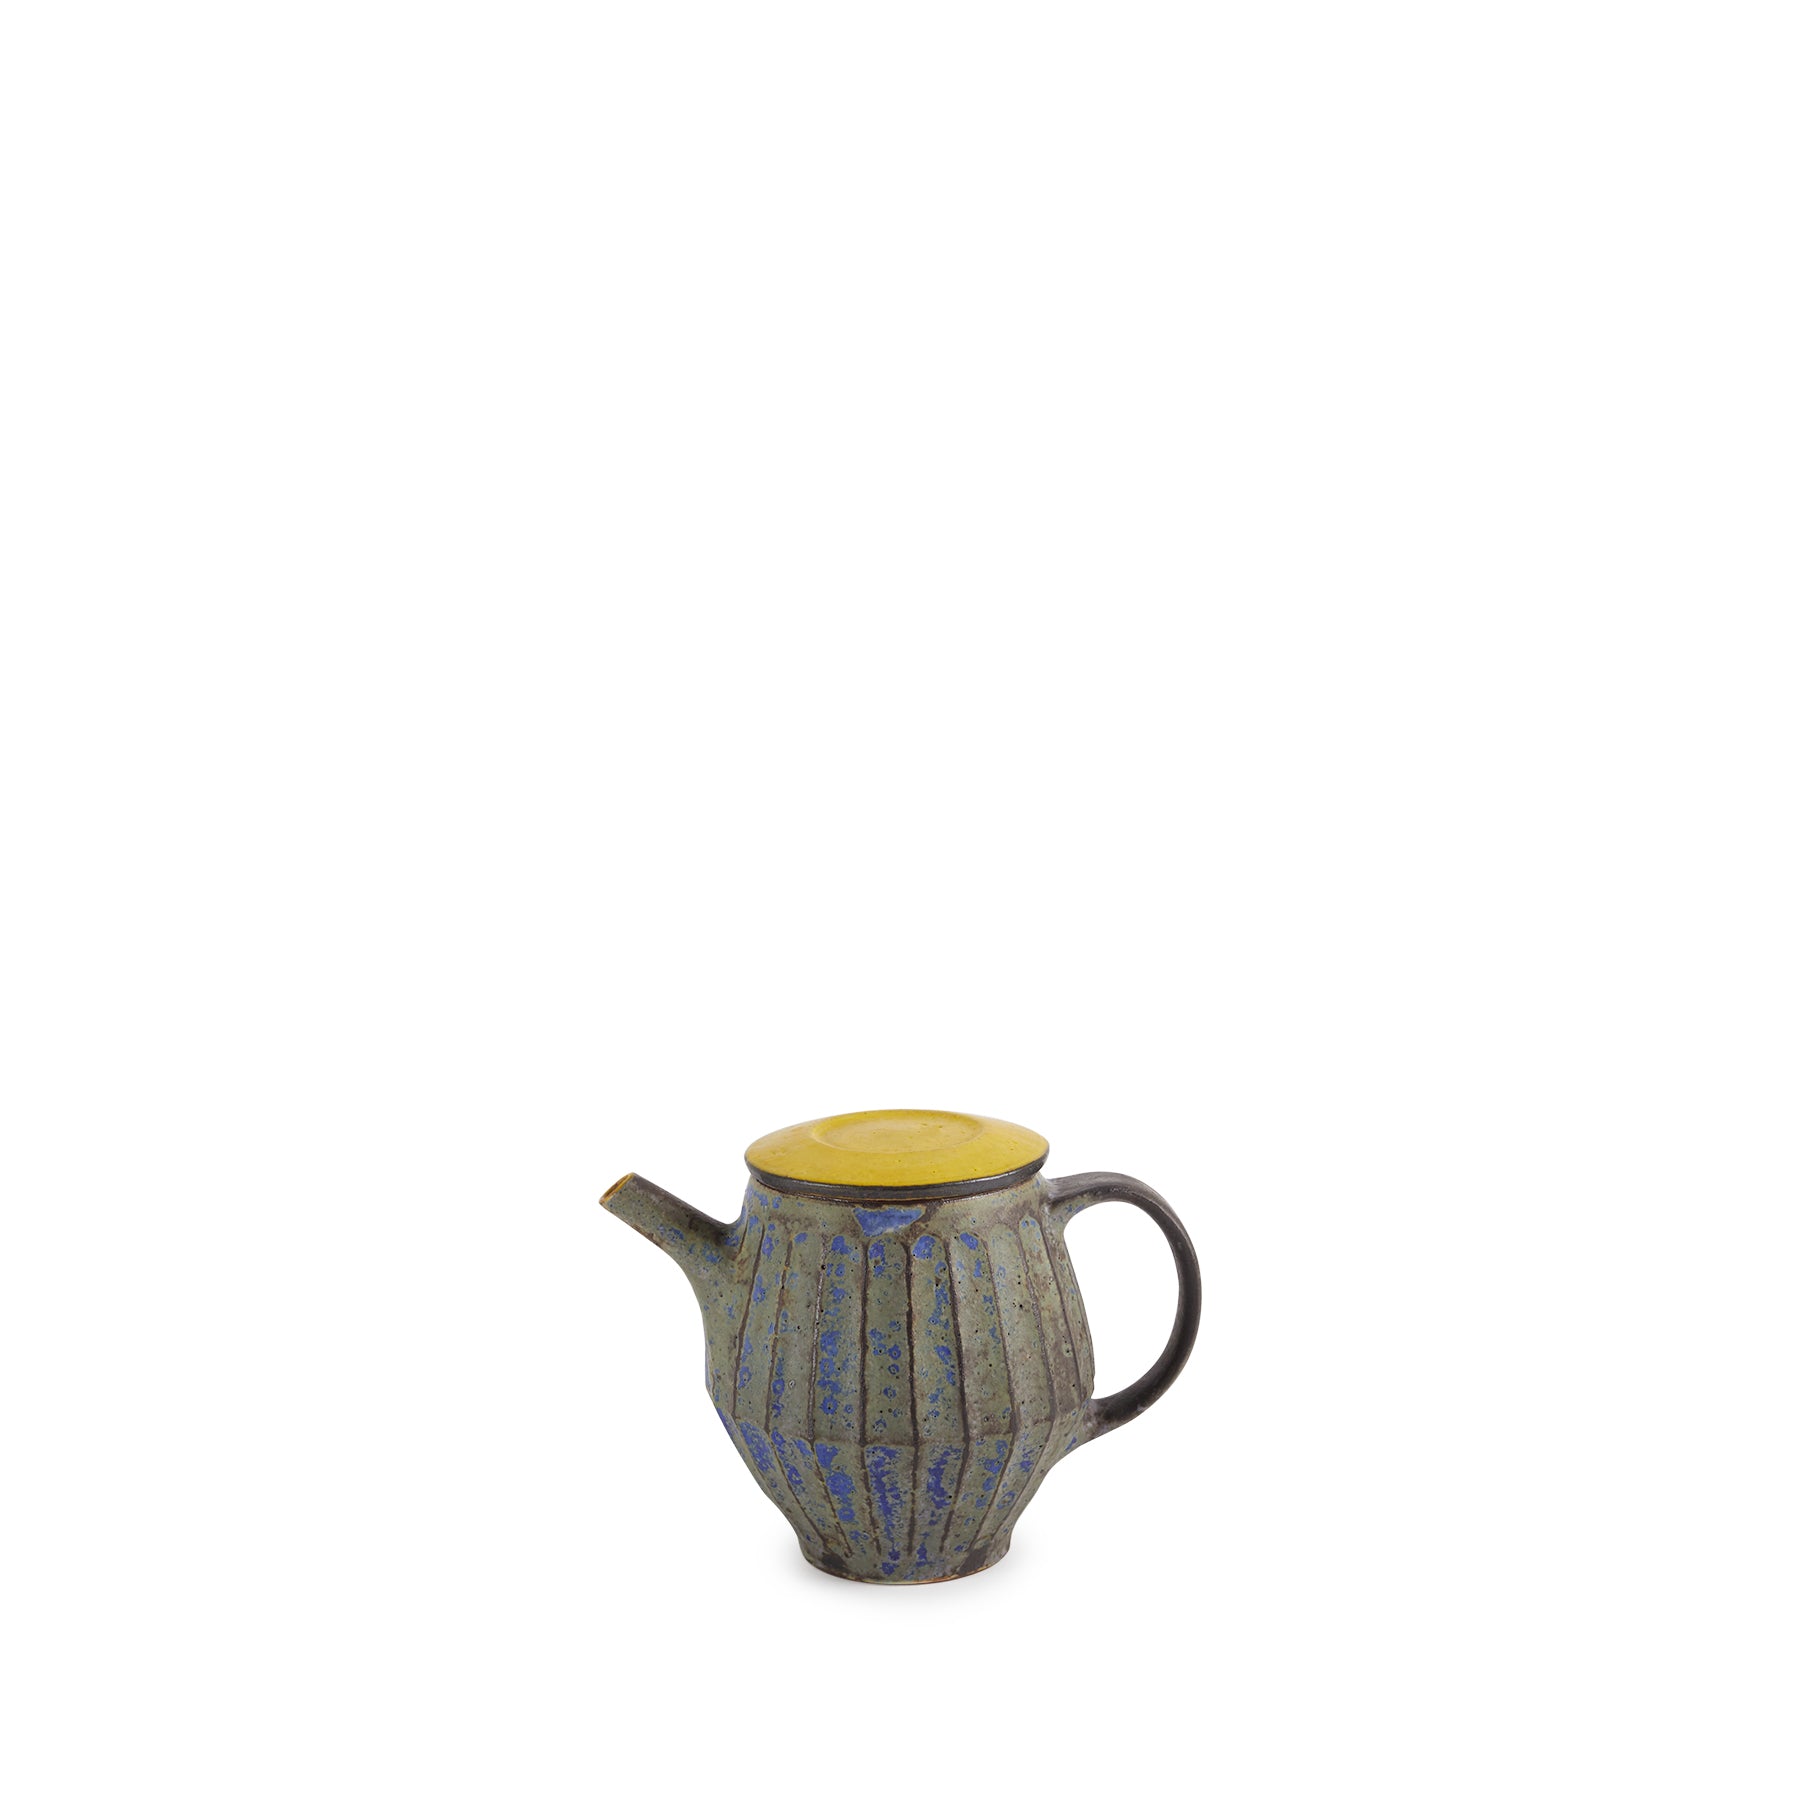 Indigo Teapot with Yellow Lid Zoom Image 1